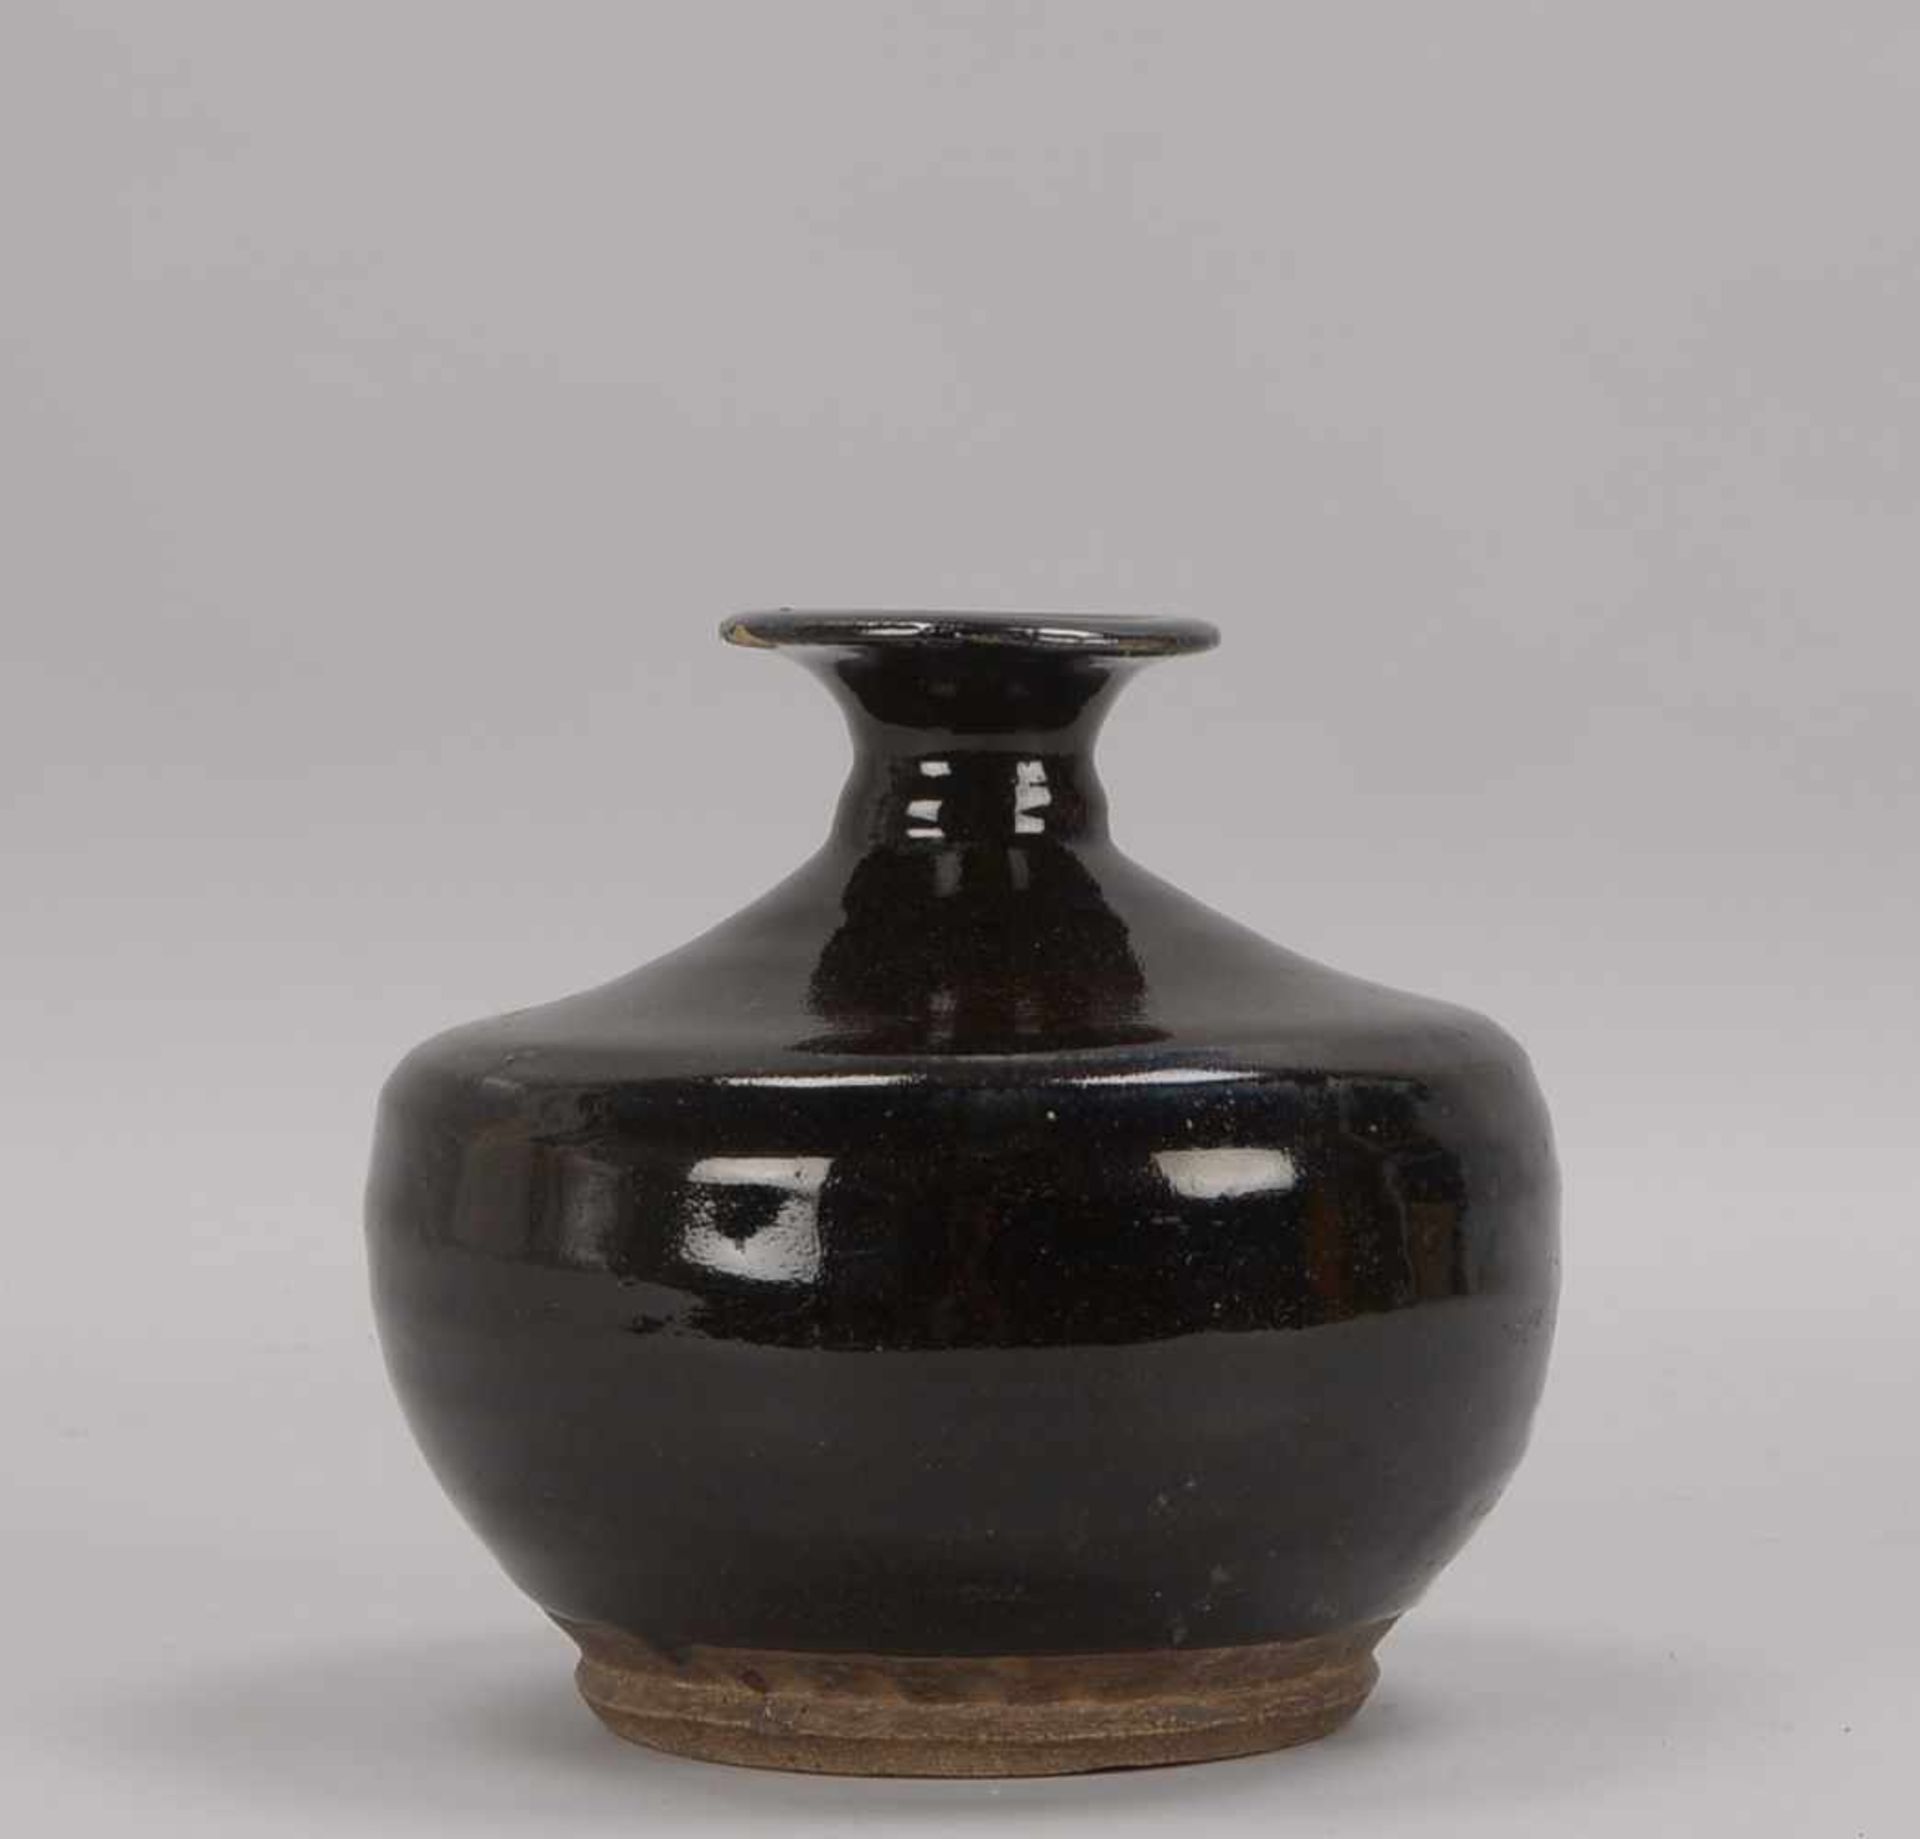 Vase, China (Ming-Dynastie), Steinzeug, mit dunkler Patina; Höhe 18 cm